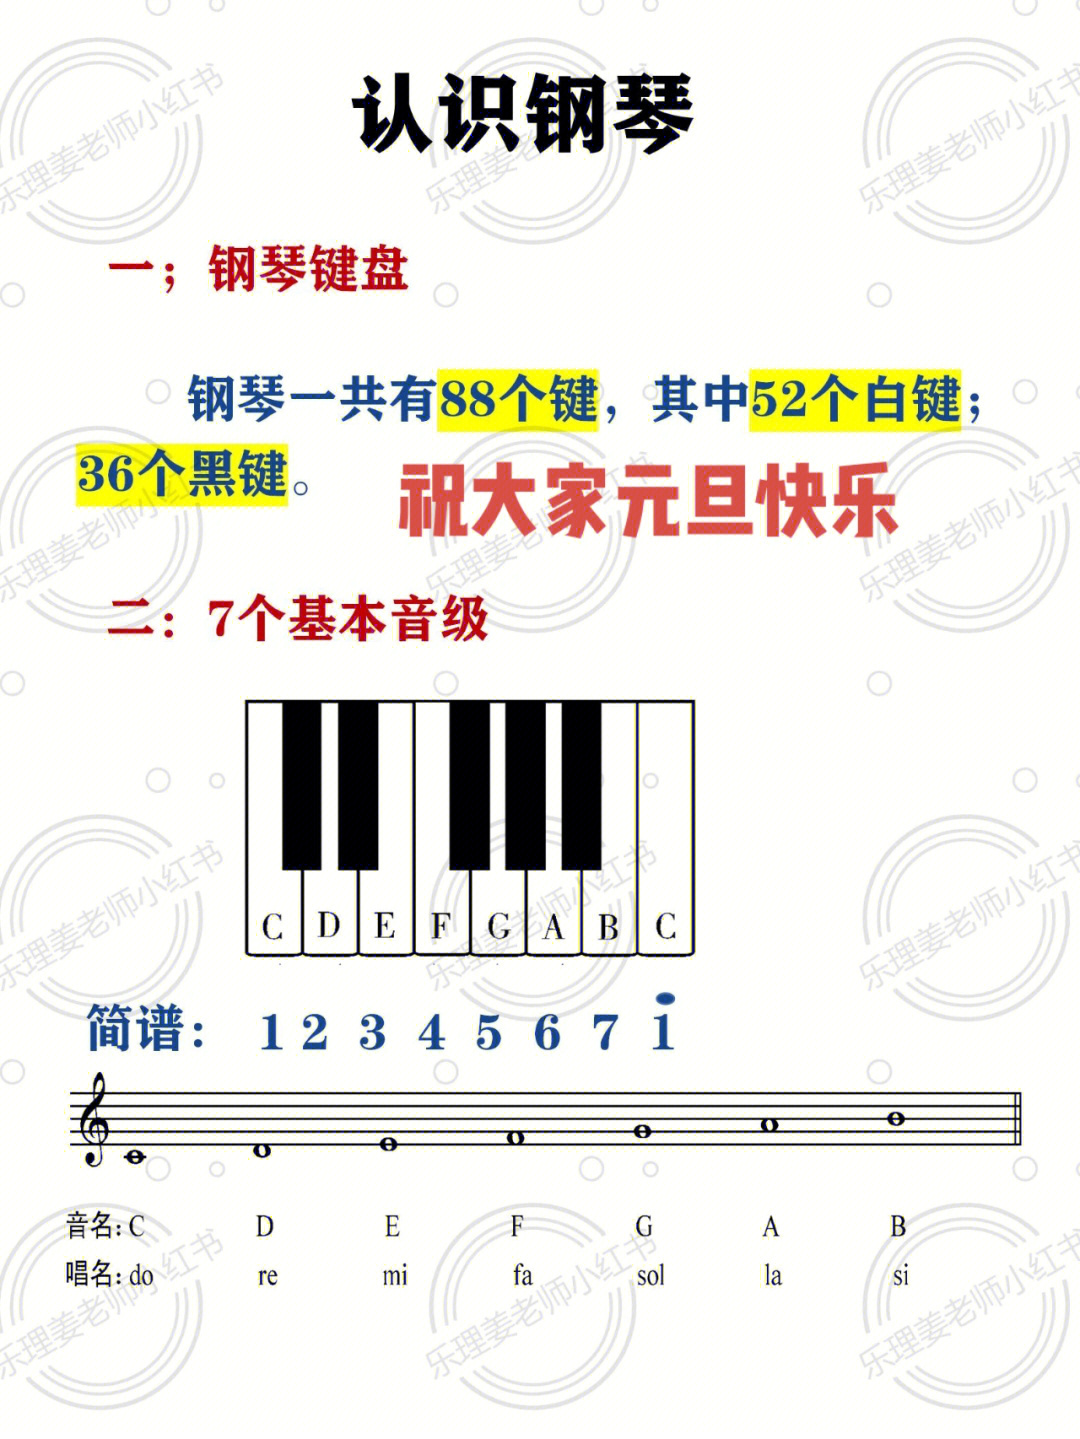 钢琴琴键识别图片